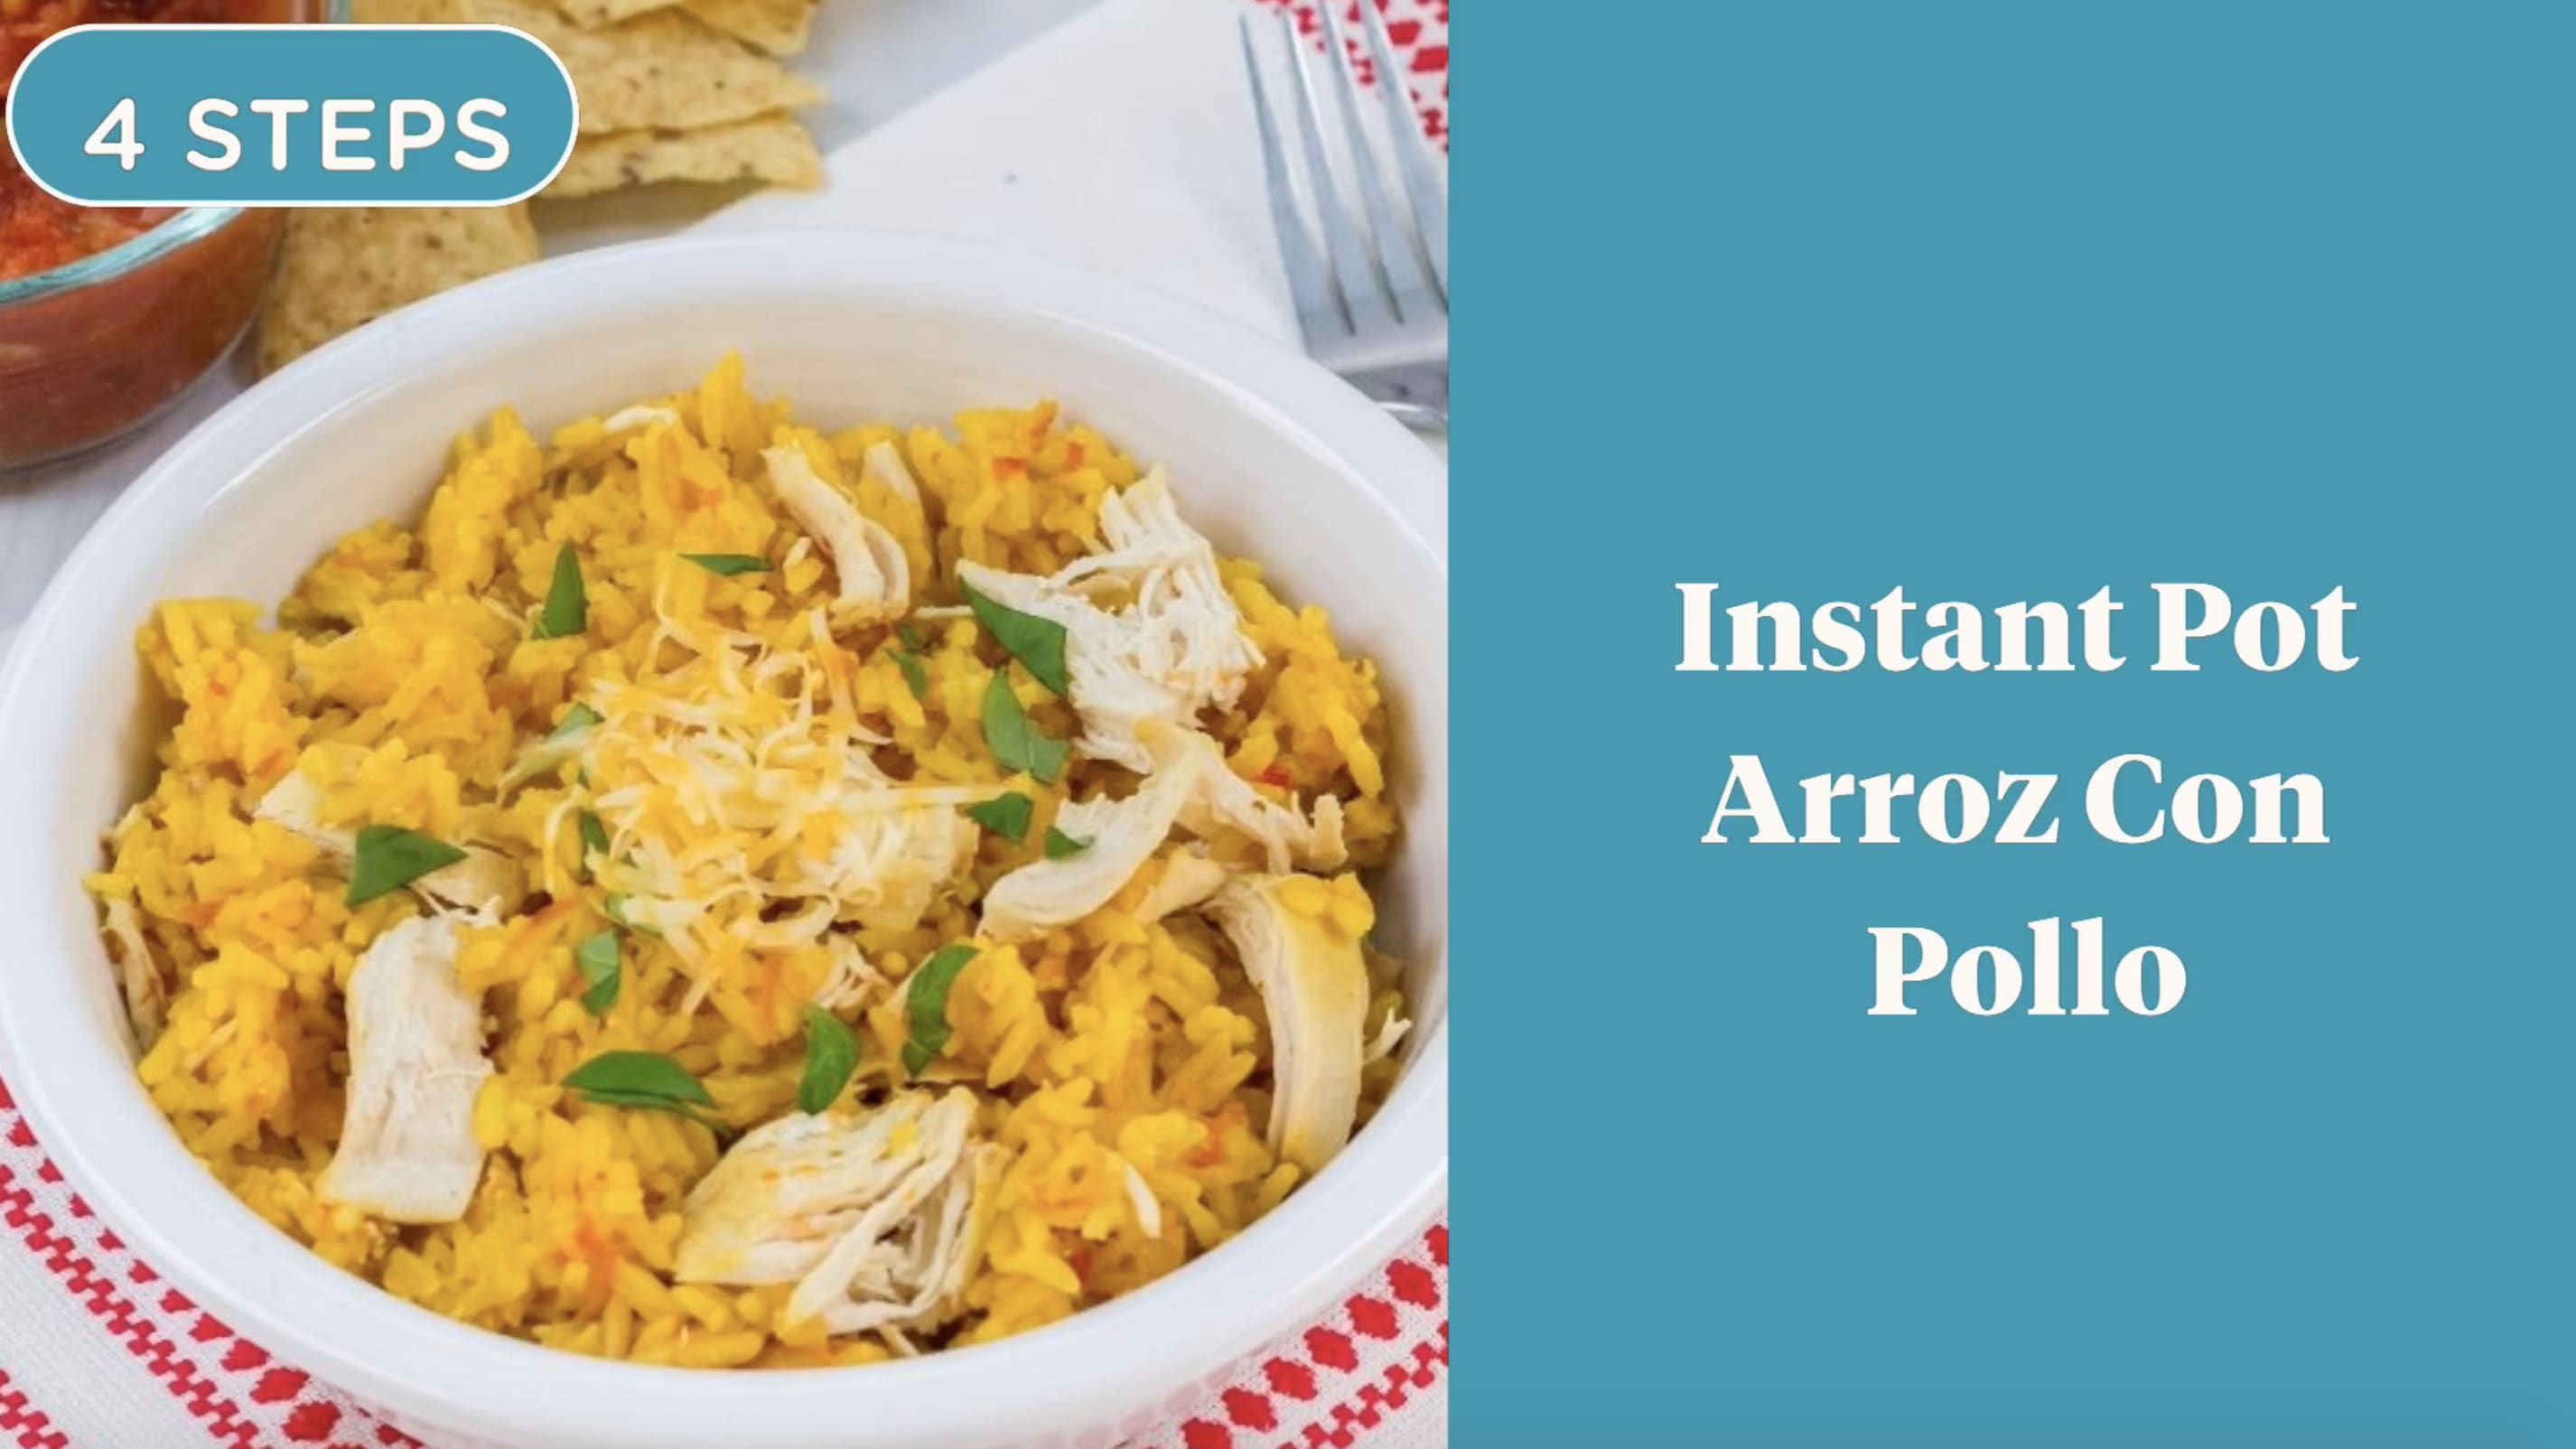 Instant Pot: Arroz con pollo. – Boricua in the Midwest